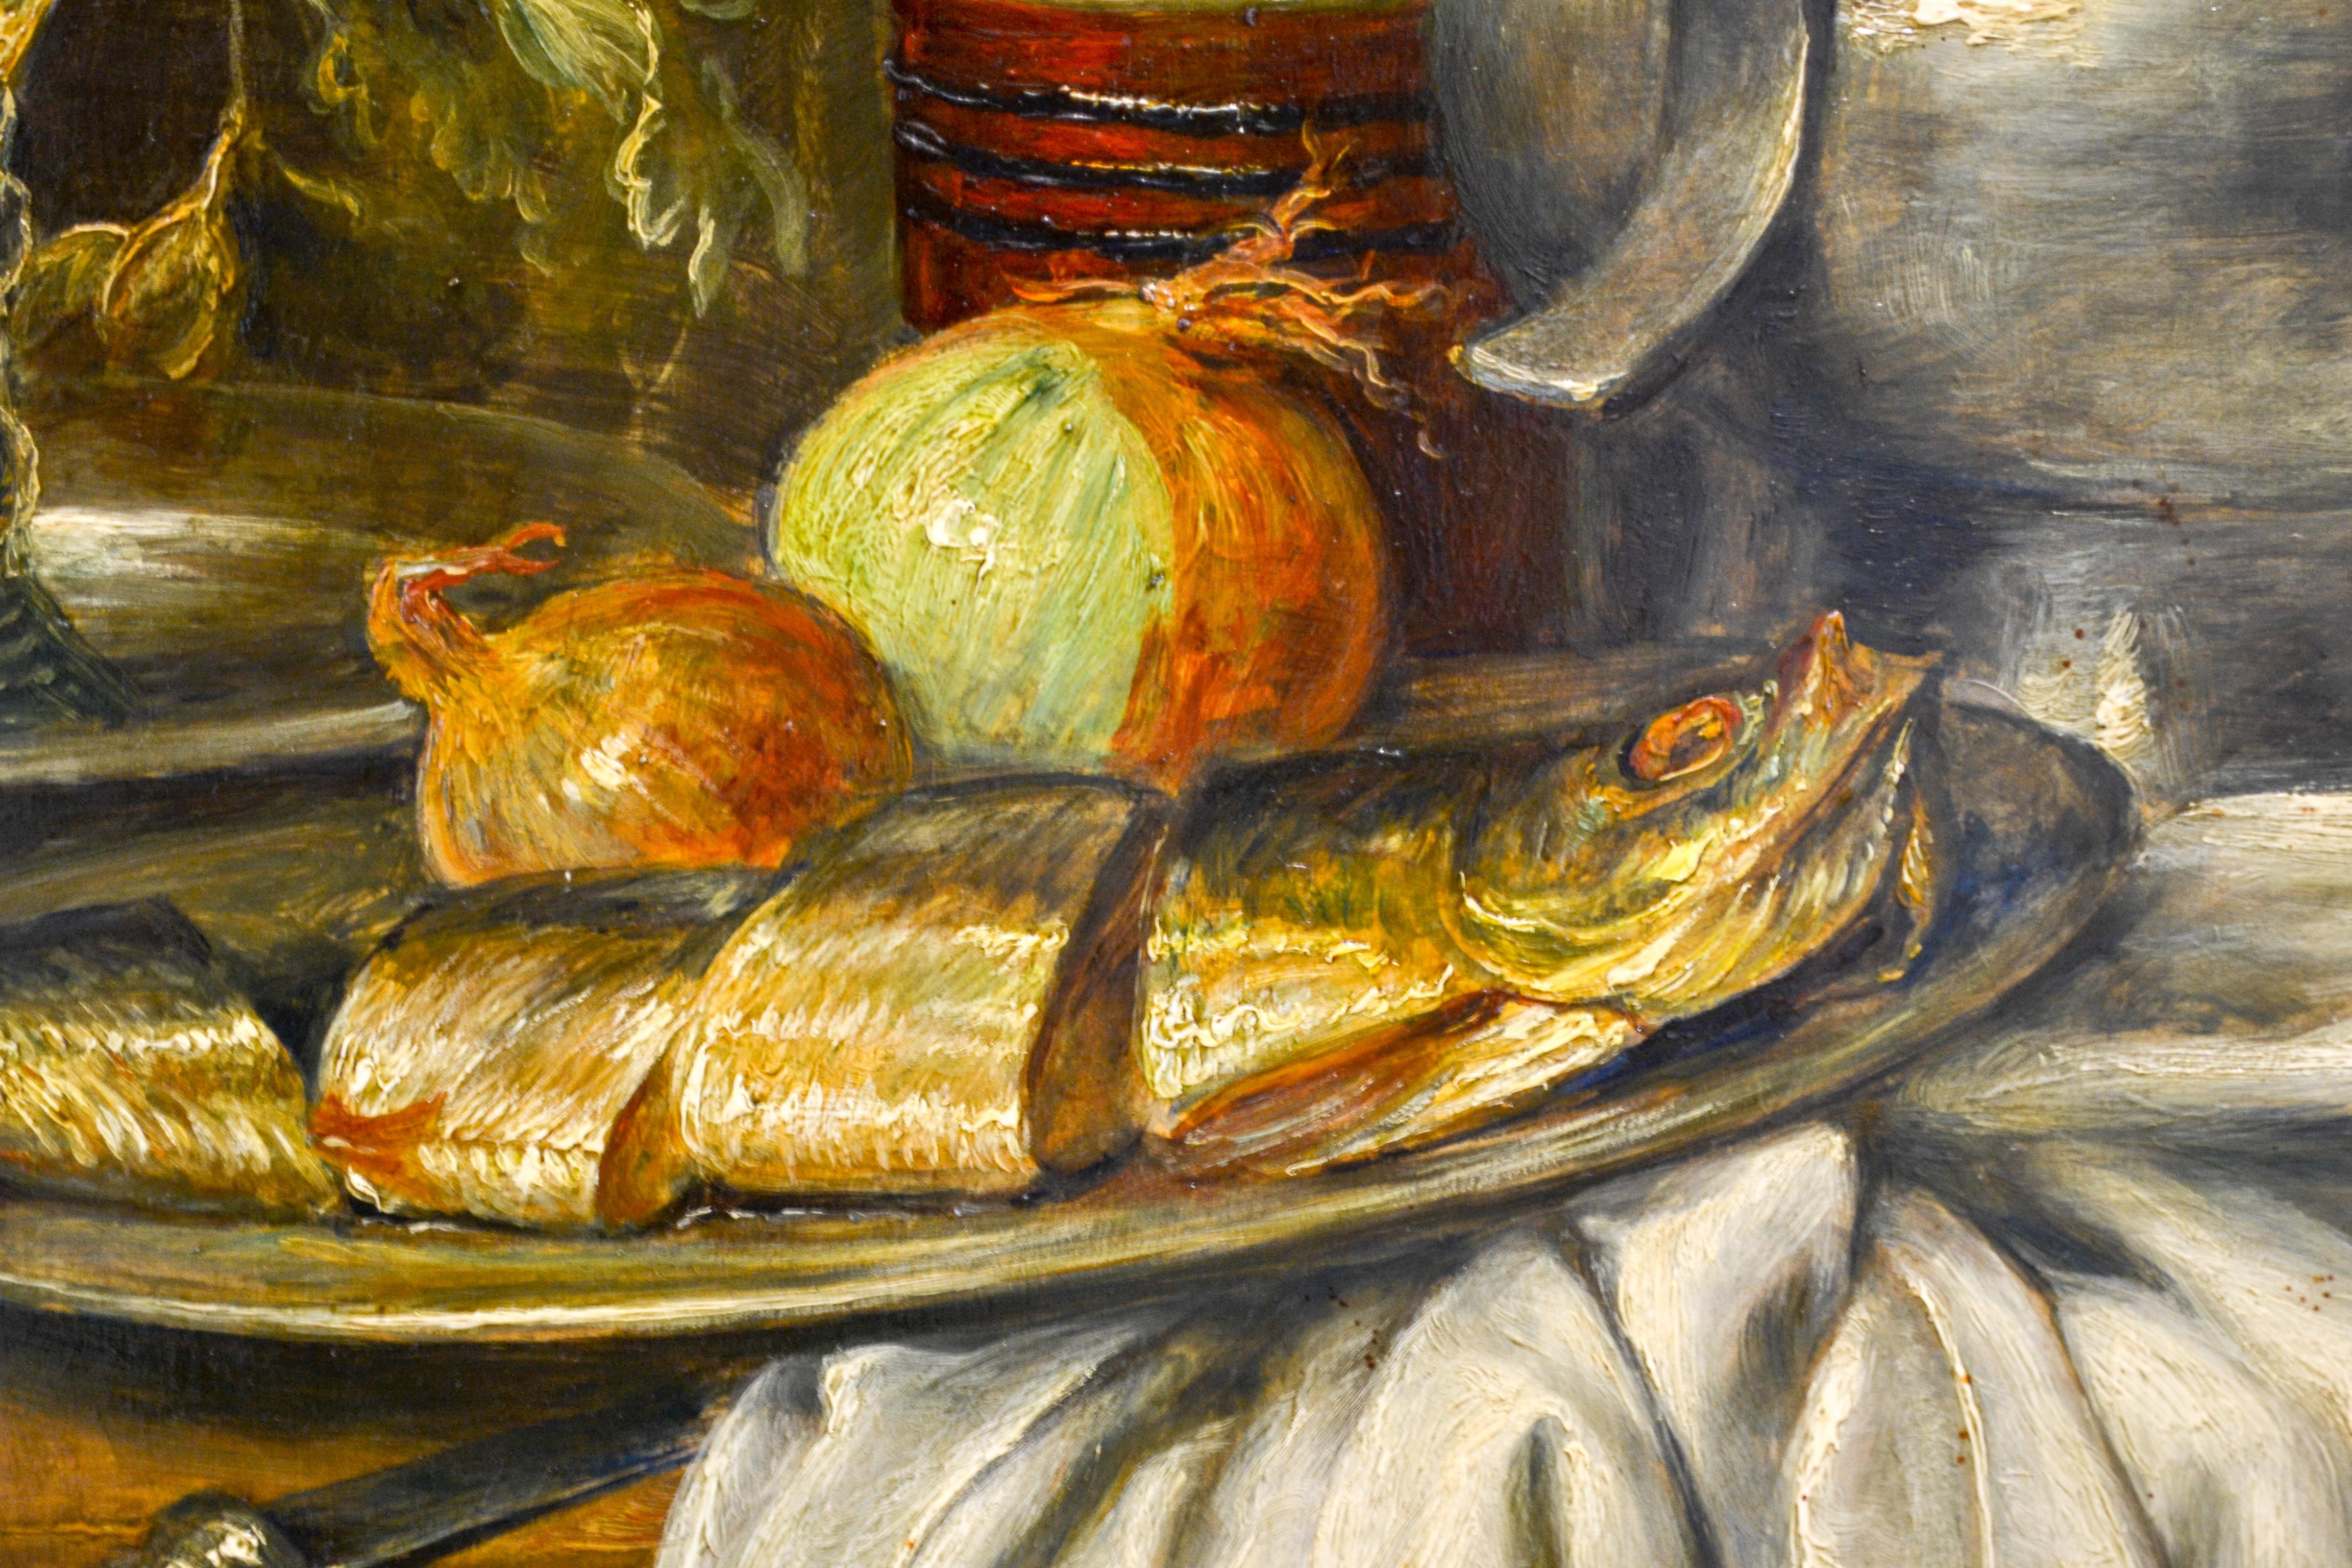 Canne et assiette en étain avec poisson, oignon et un verre de bière - Nature morte hollandaise classique  - Contemporain Painting par Cornelis Le Mair